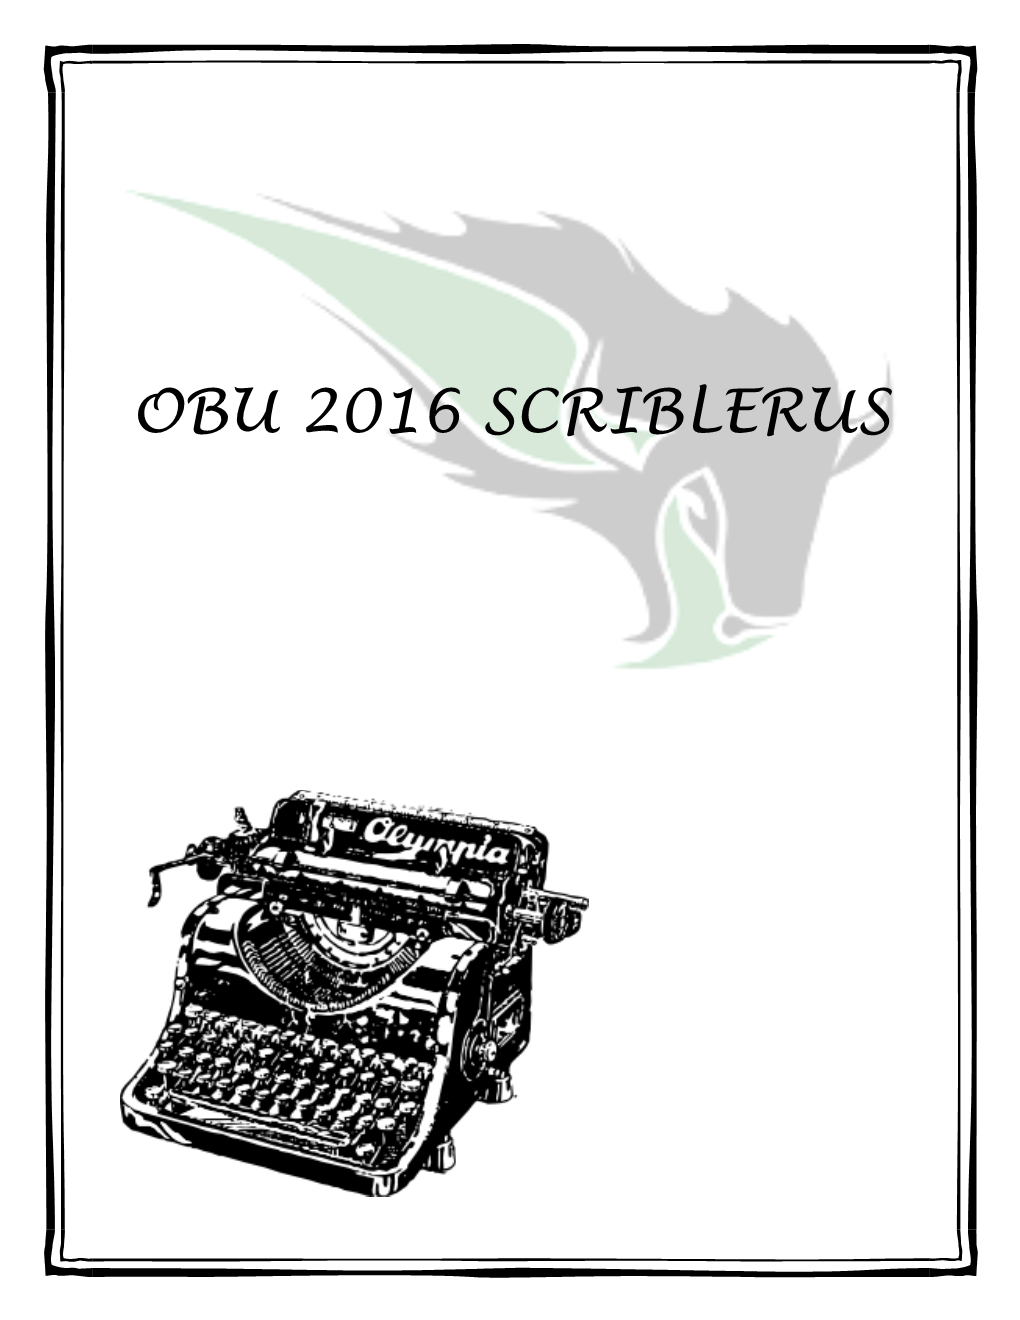 Obu 2016 Scriblerus